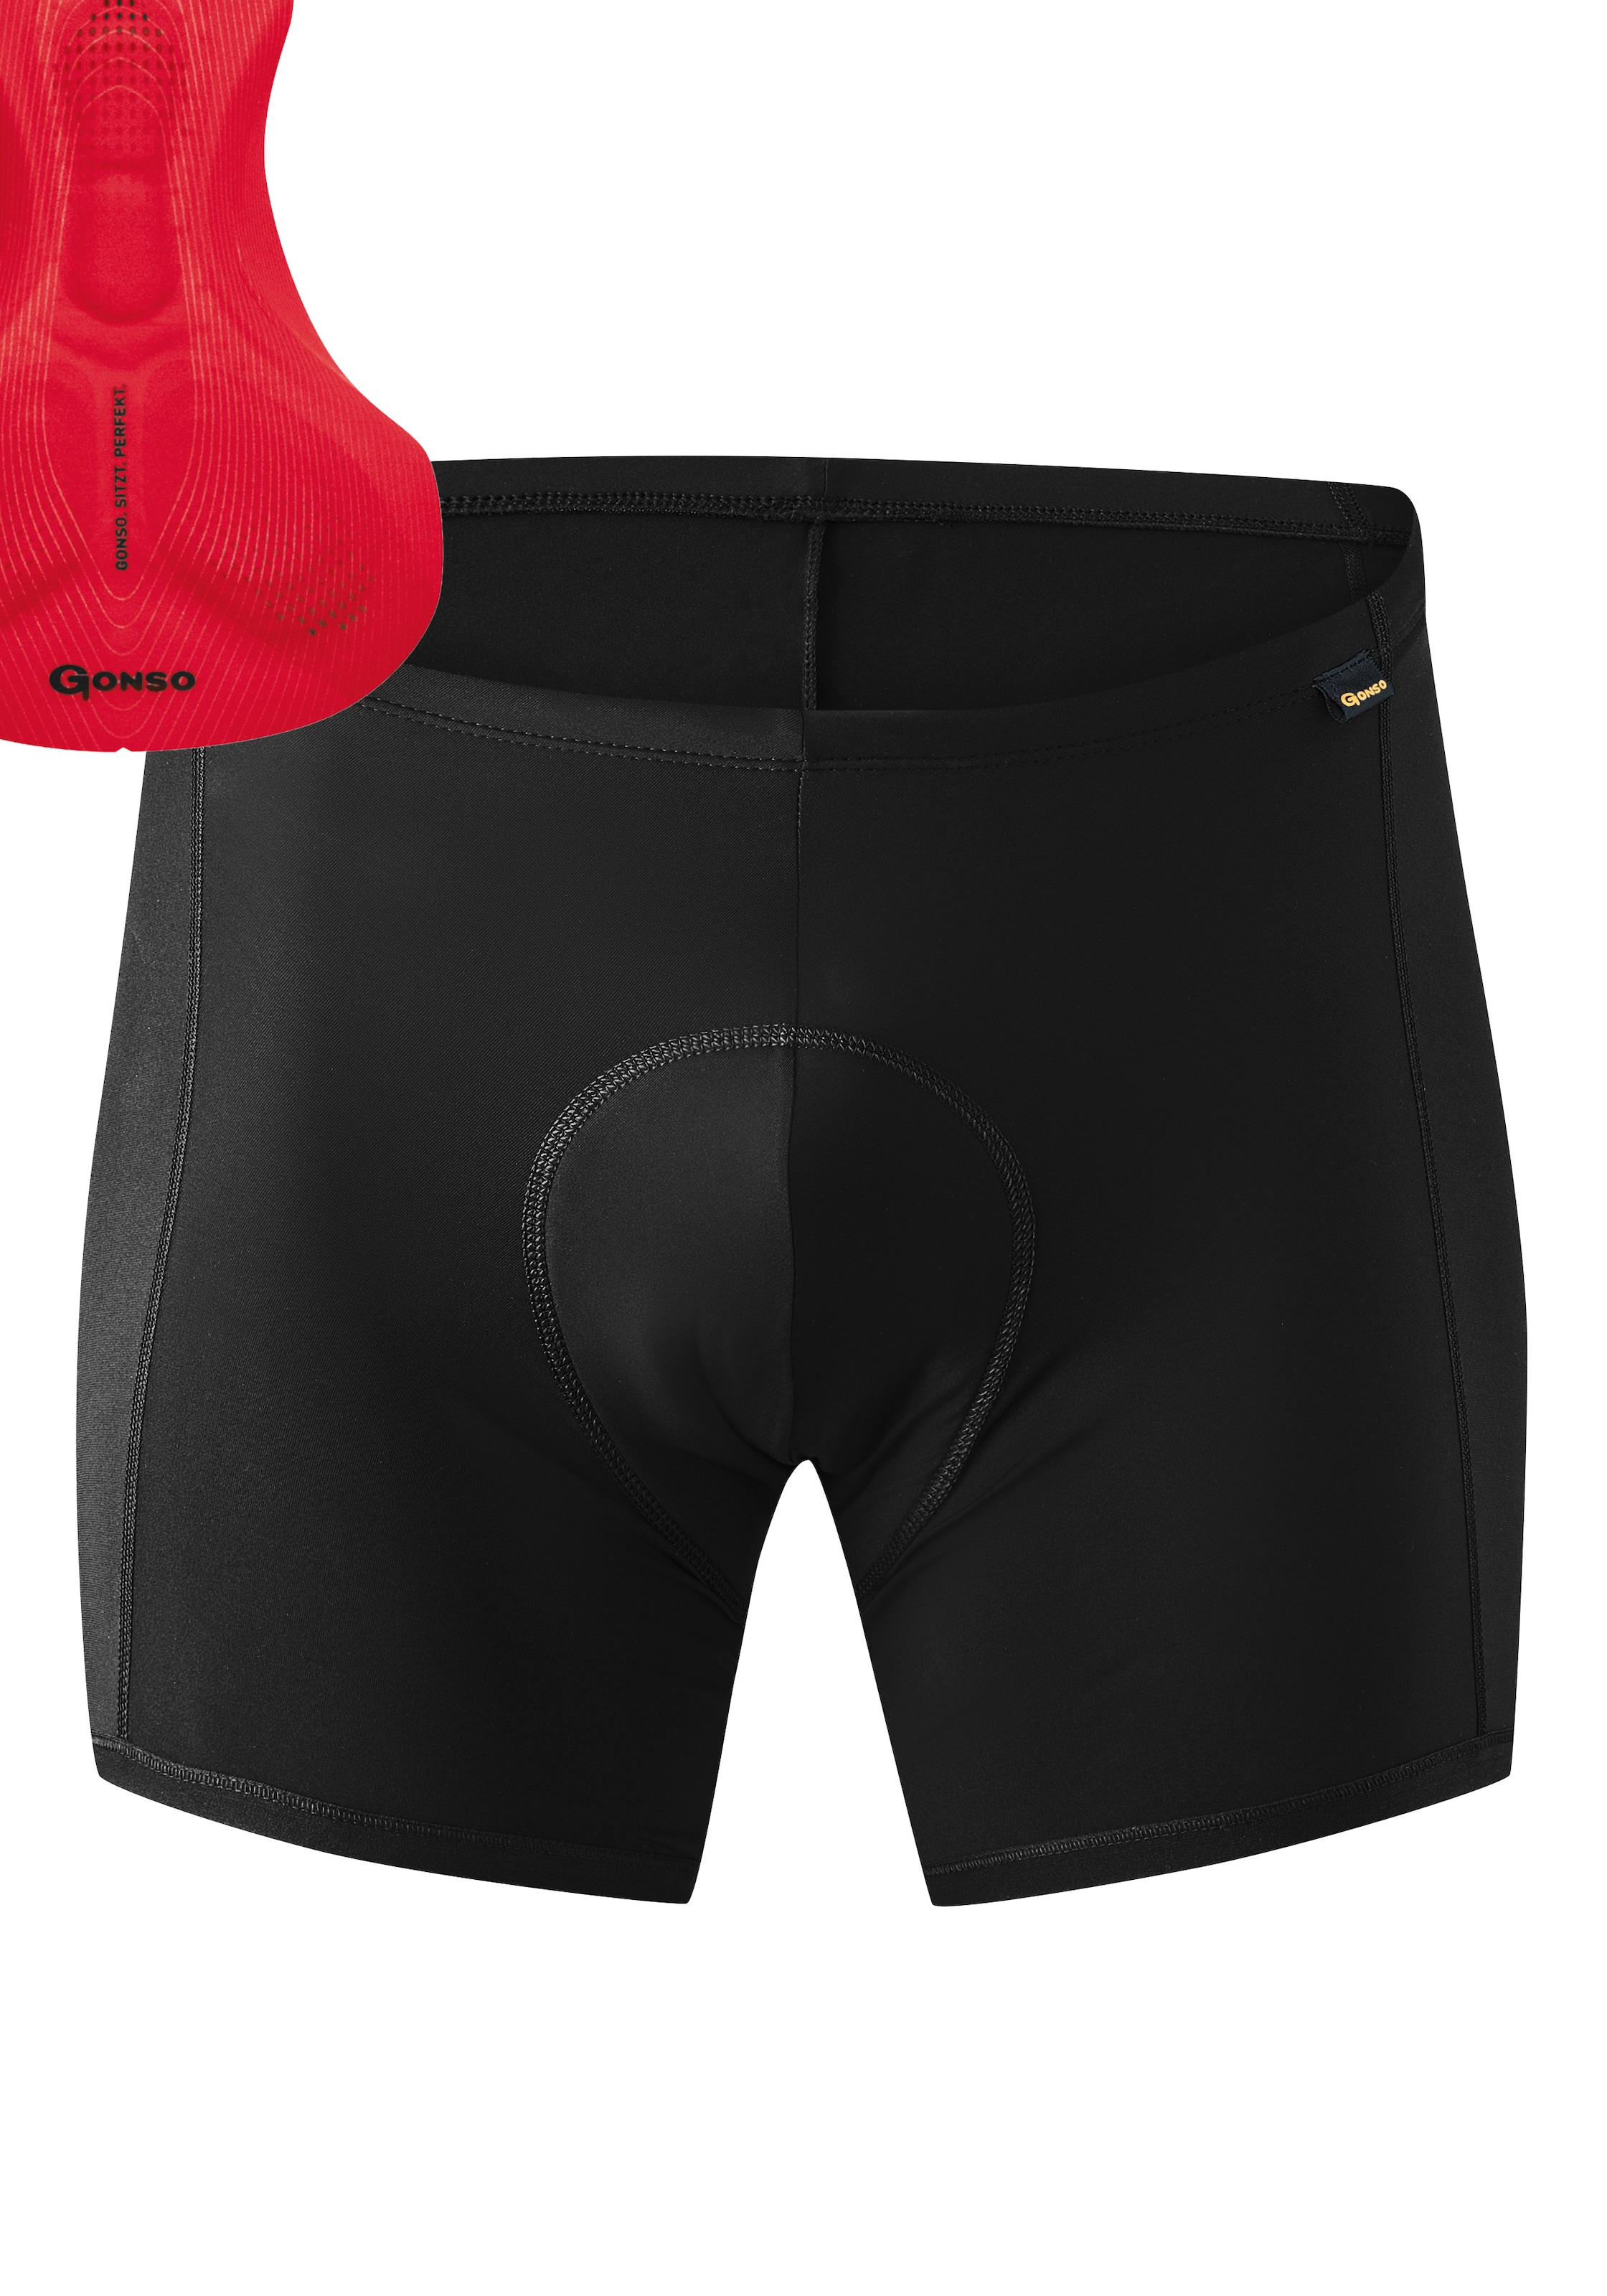 M«, »Sitivo mit Rad-Shorts U Gonso jeder kombinierbar bestellen ▷ | BAUR Fahrradhose Herren U-Pants